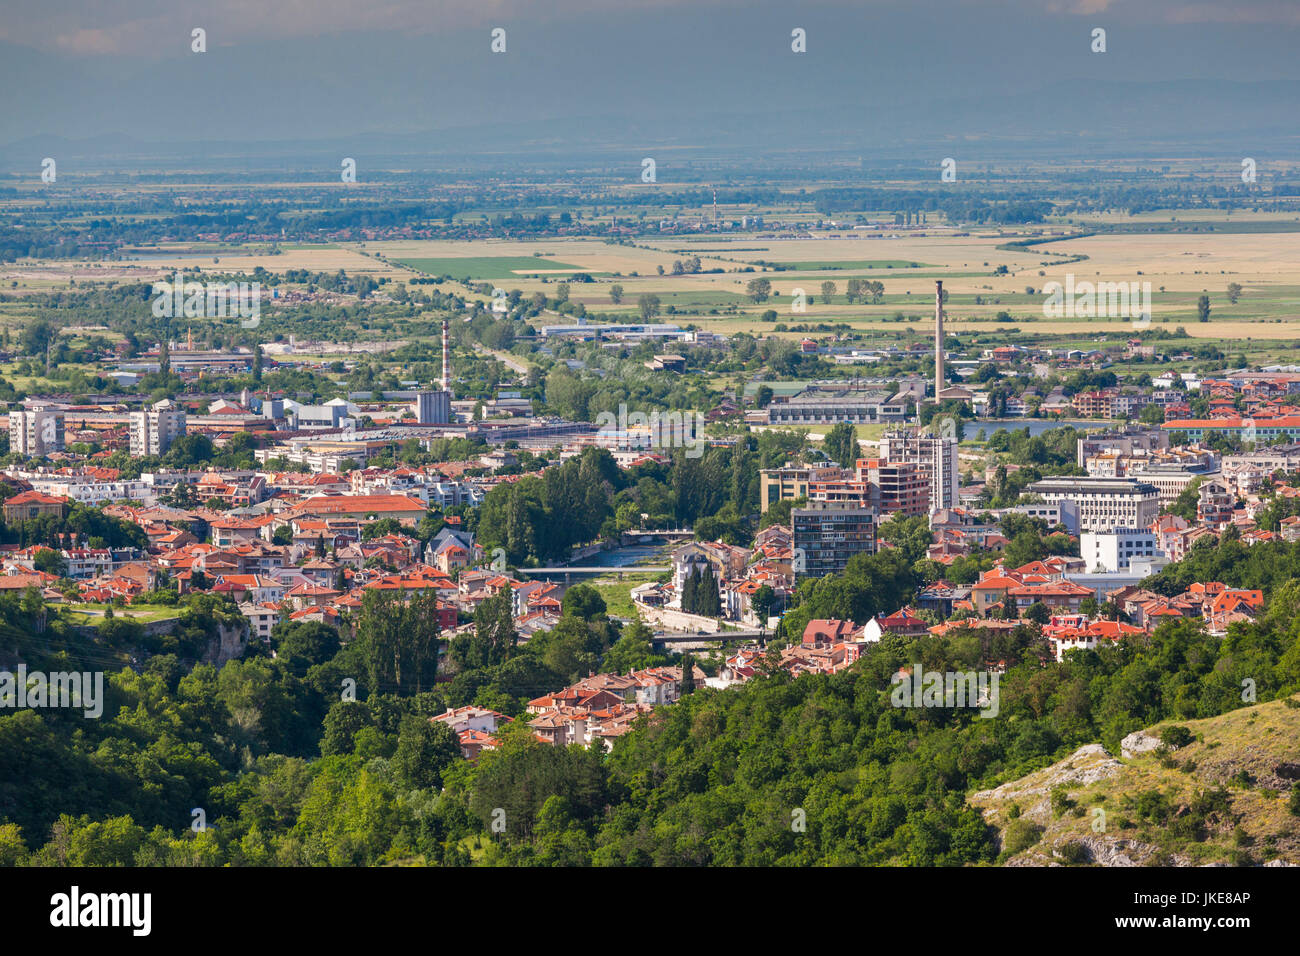 Bulgaria, Southern Mountains, Asenovgrad, elevated city view Stock Photo